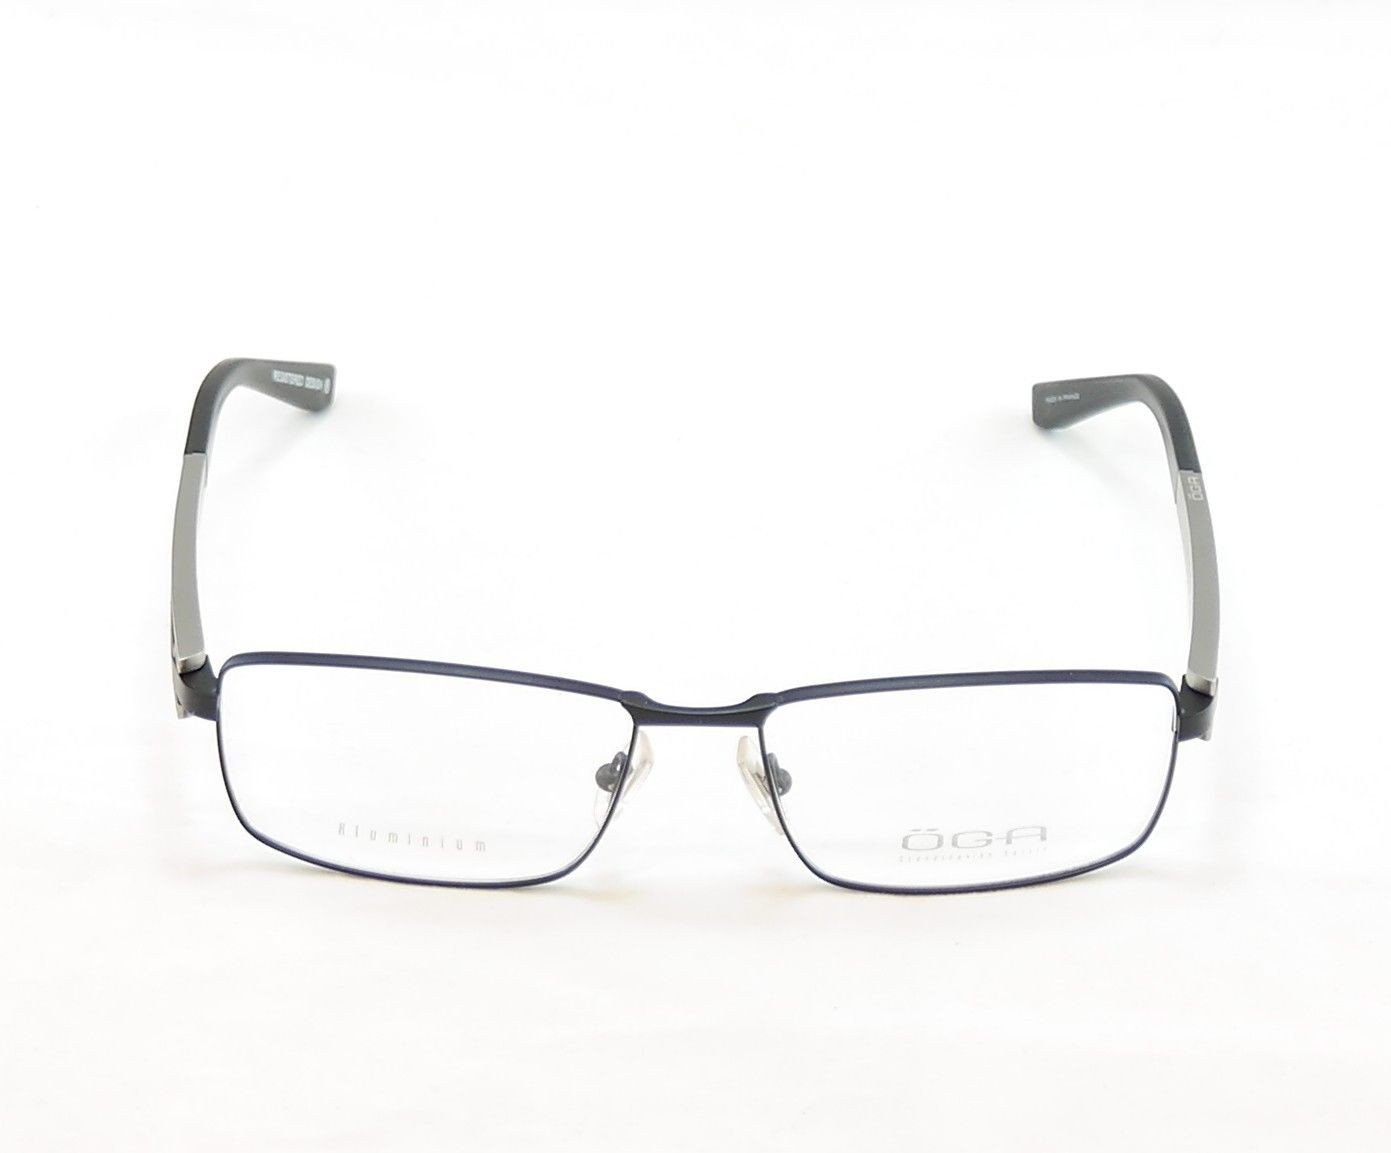 OGA Morel Eyeglasses Frame 74120 NN030 Matt Black Plastic Metal France ...